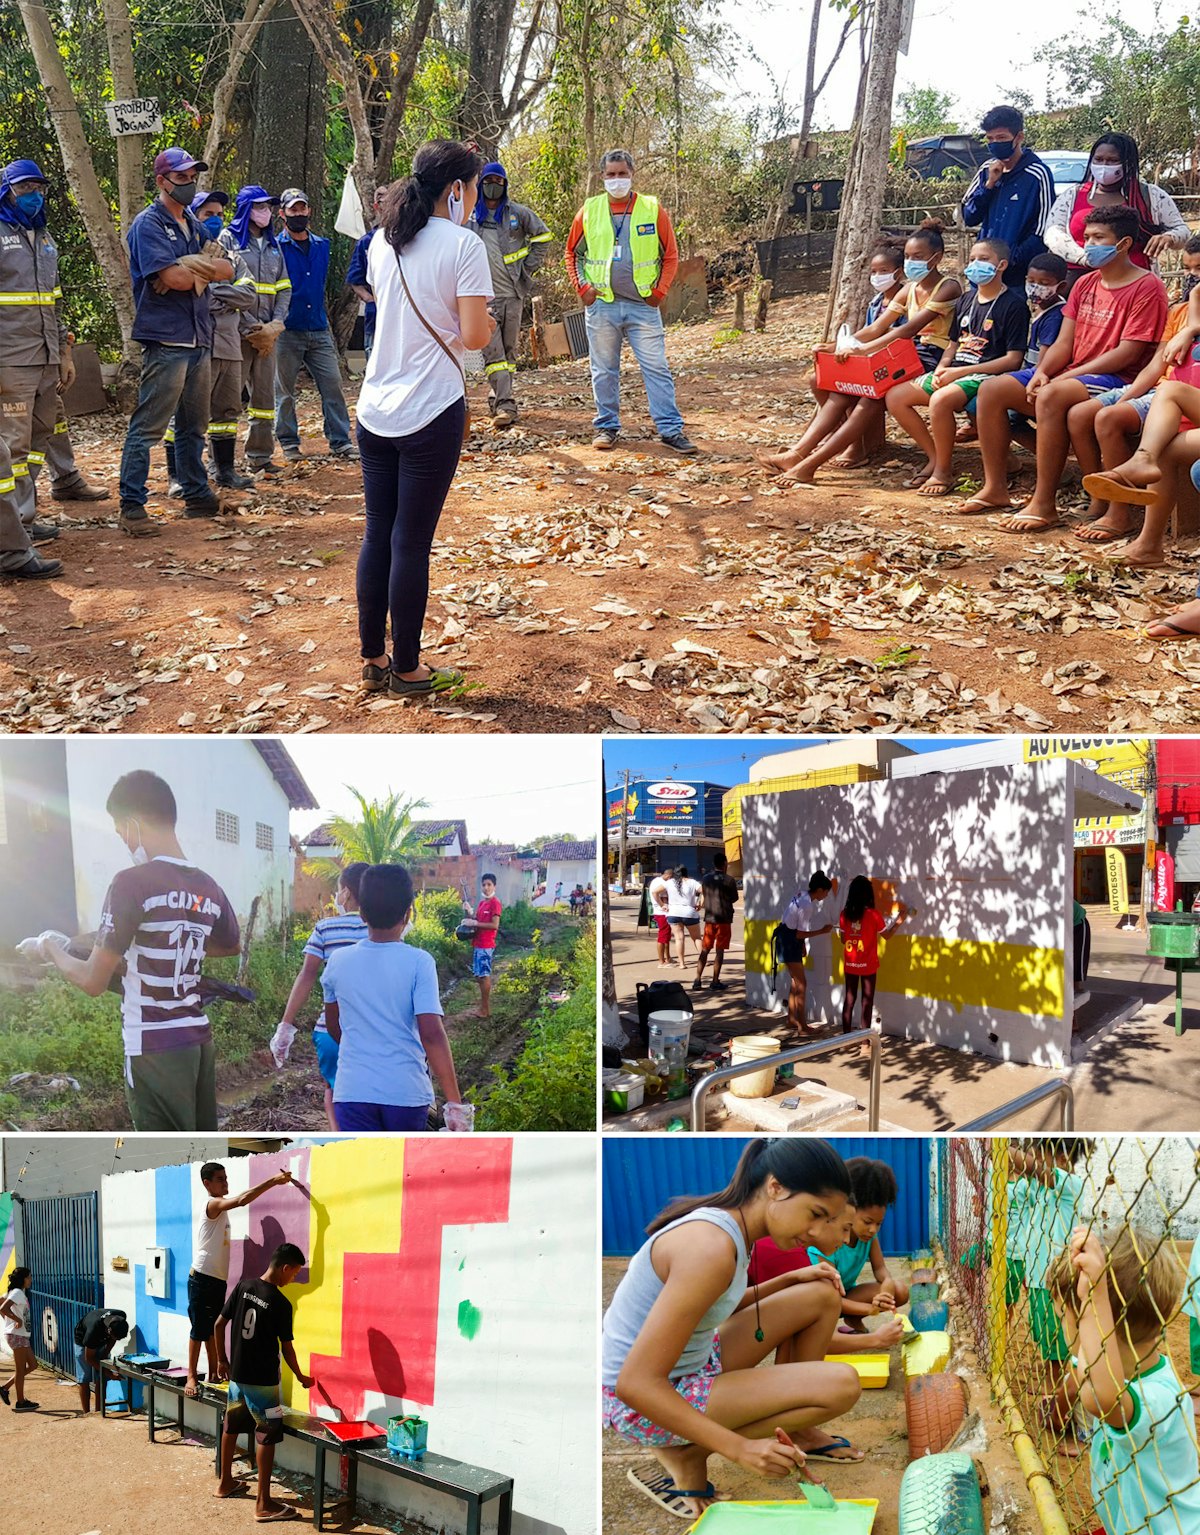 En Brasil, un grupo de jóvenes que participan en actividades bahá’ís de construcción de comunidad aprovecharon el apoyo brindado por el Gobierno para retirar 12 toneladas de basura de un río de la zona.